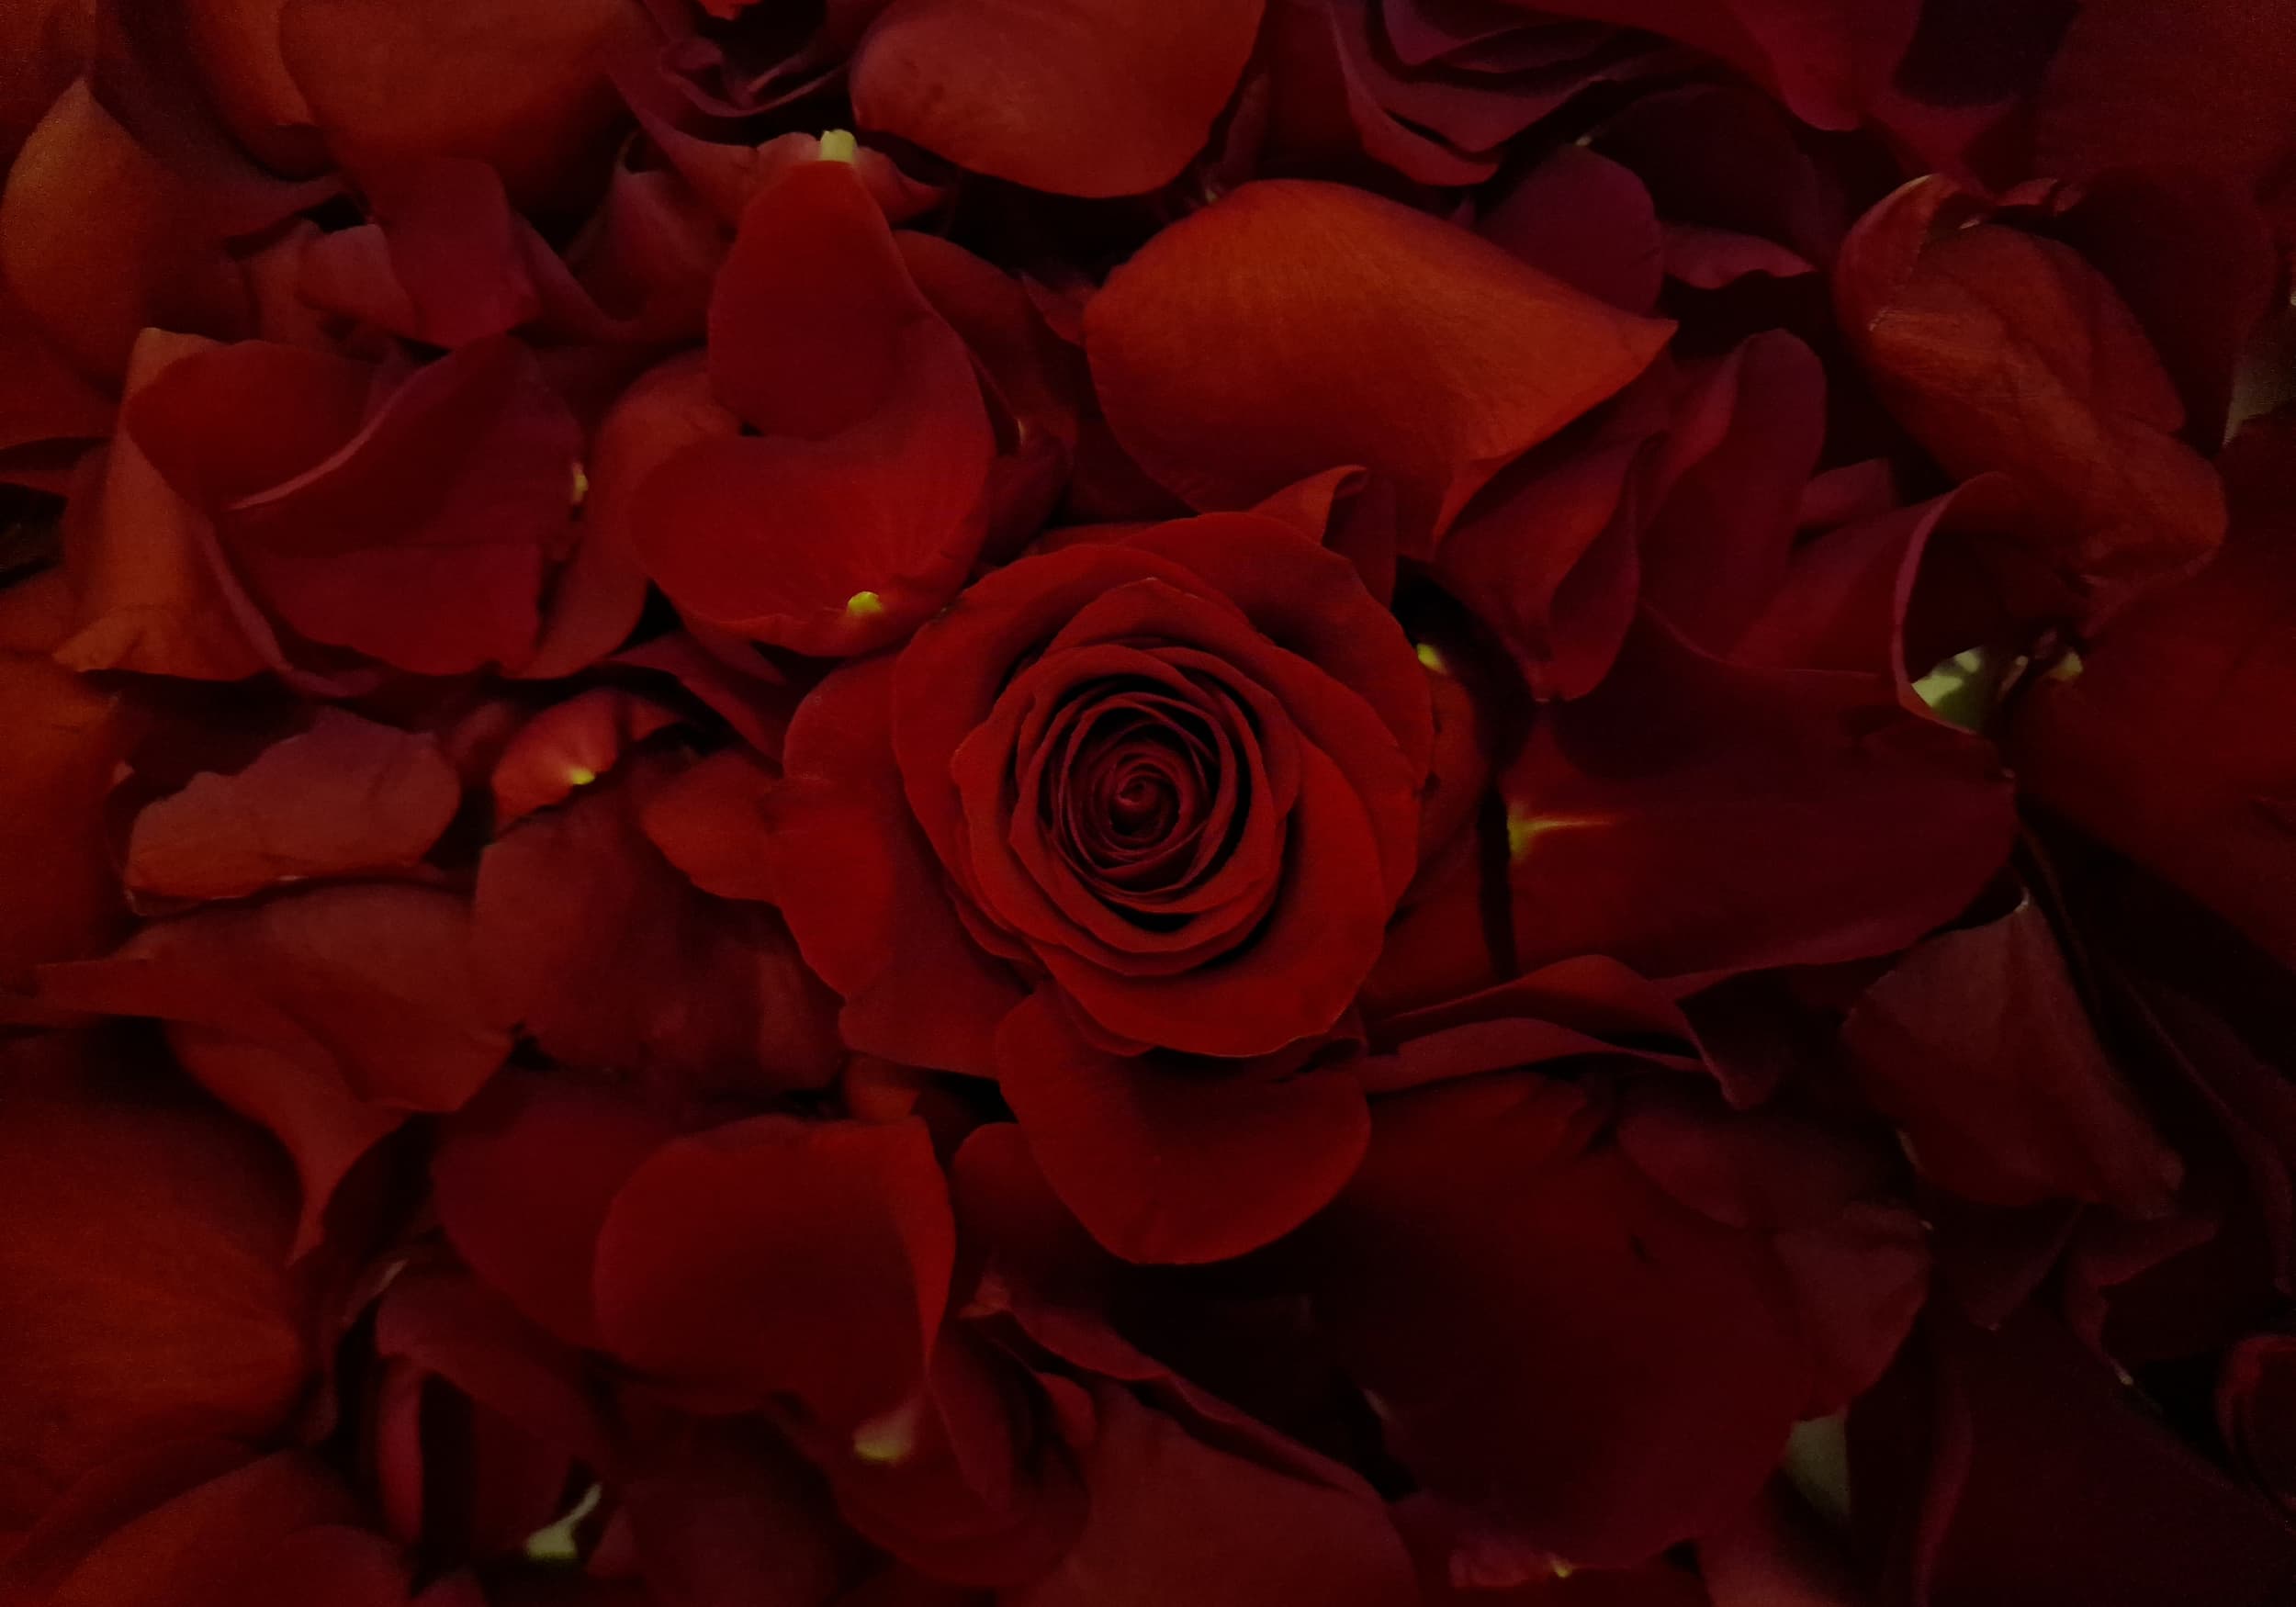 Rose Petal Display